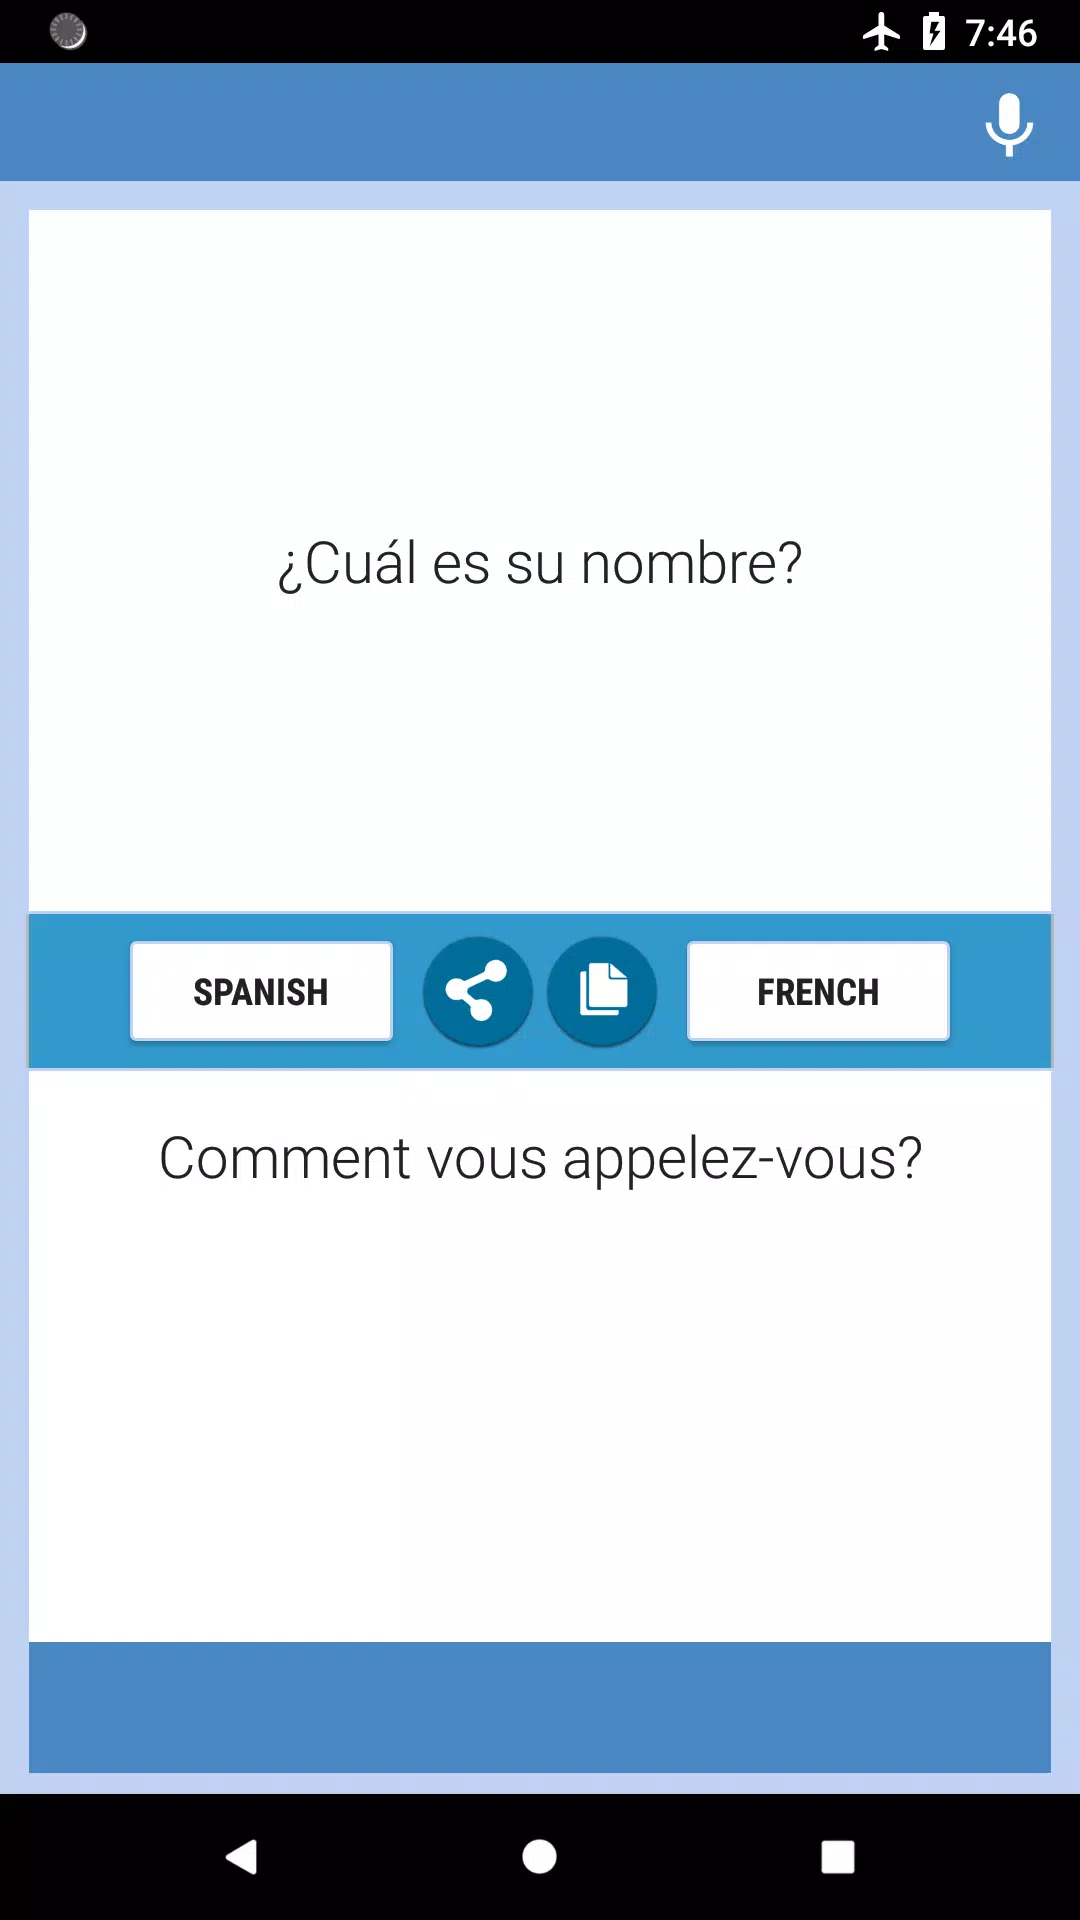 Descarga de APK de Español-Francés Traductor para Android